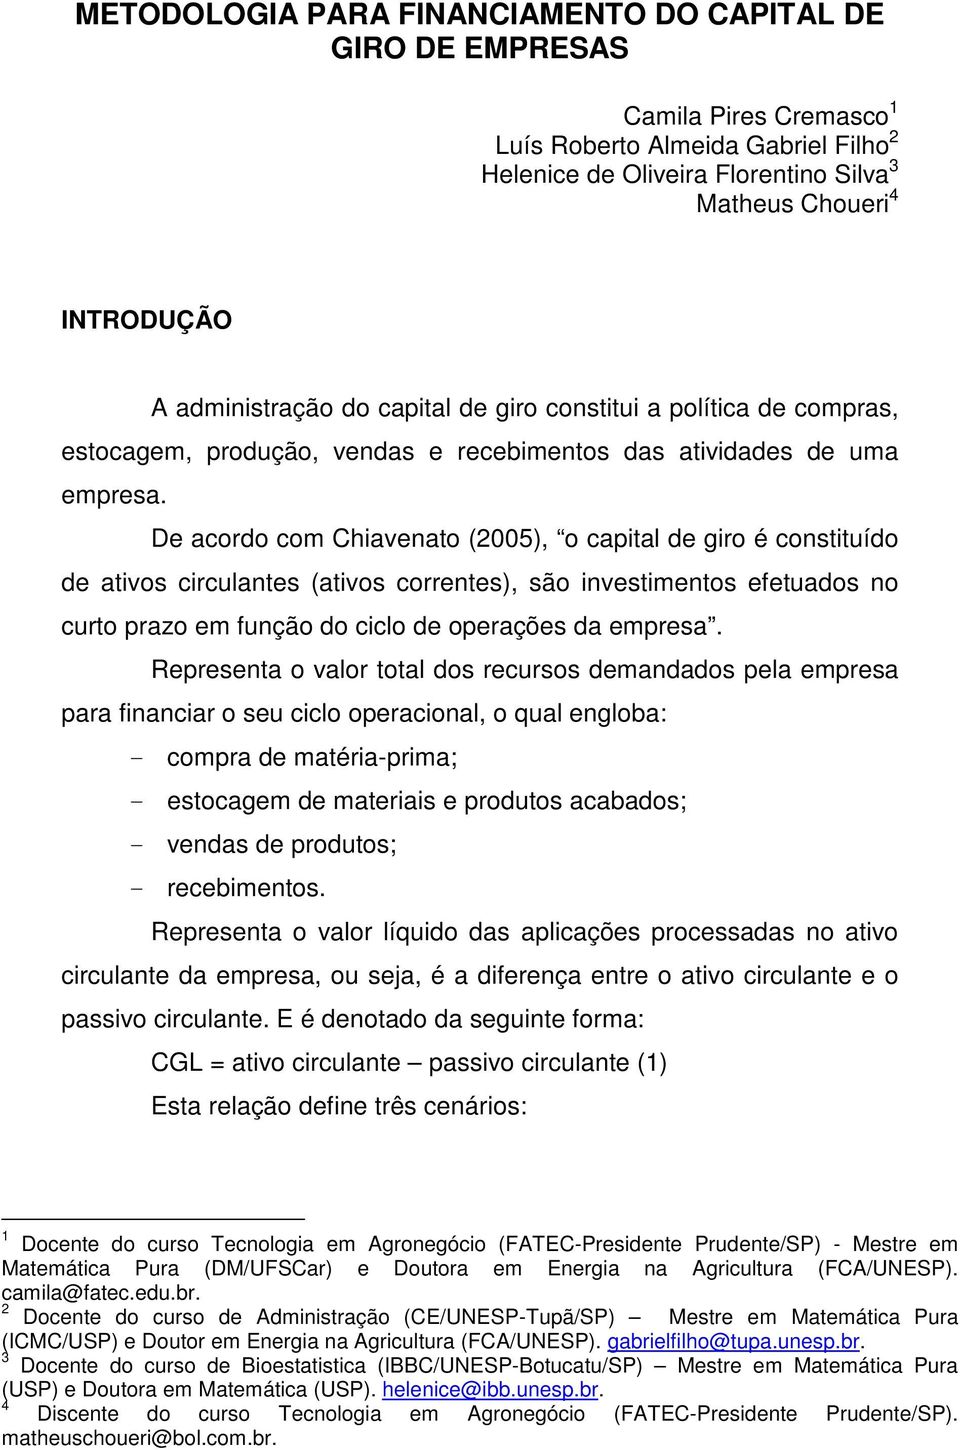 De acordo com Chiavenato (2005), o capital de giro é constituído de ativos circulantes (ativos correntes), são investimentos efetuados no curto prazo em função do ciclo de operações da empresa.